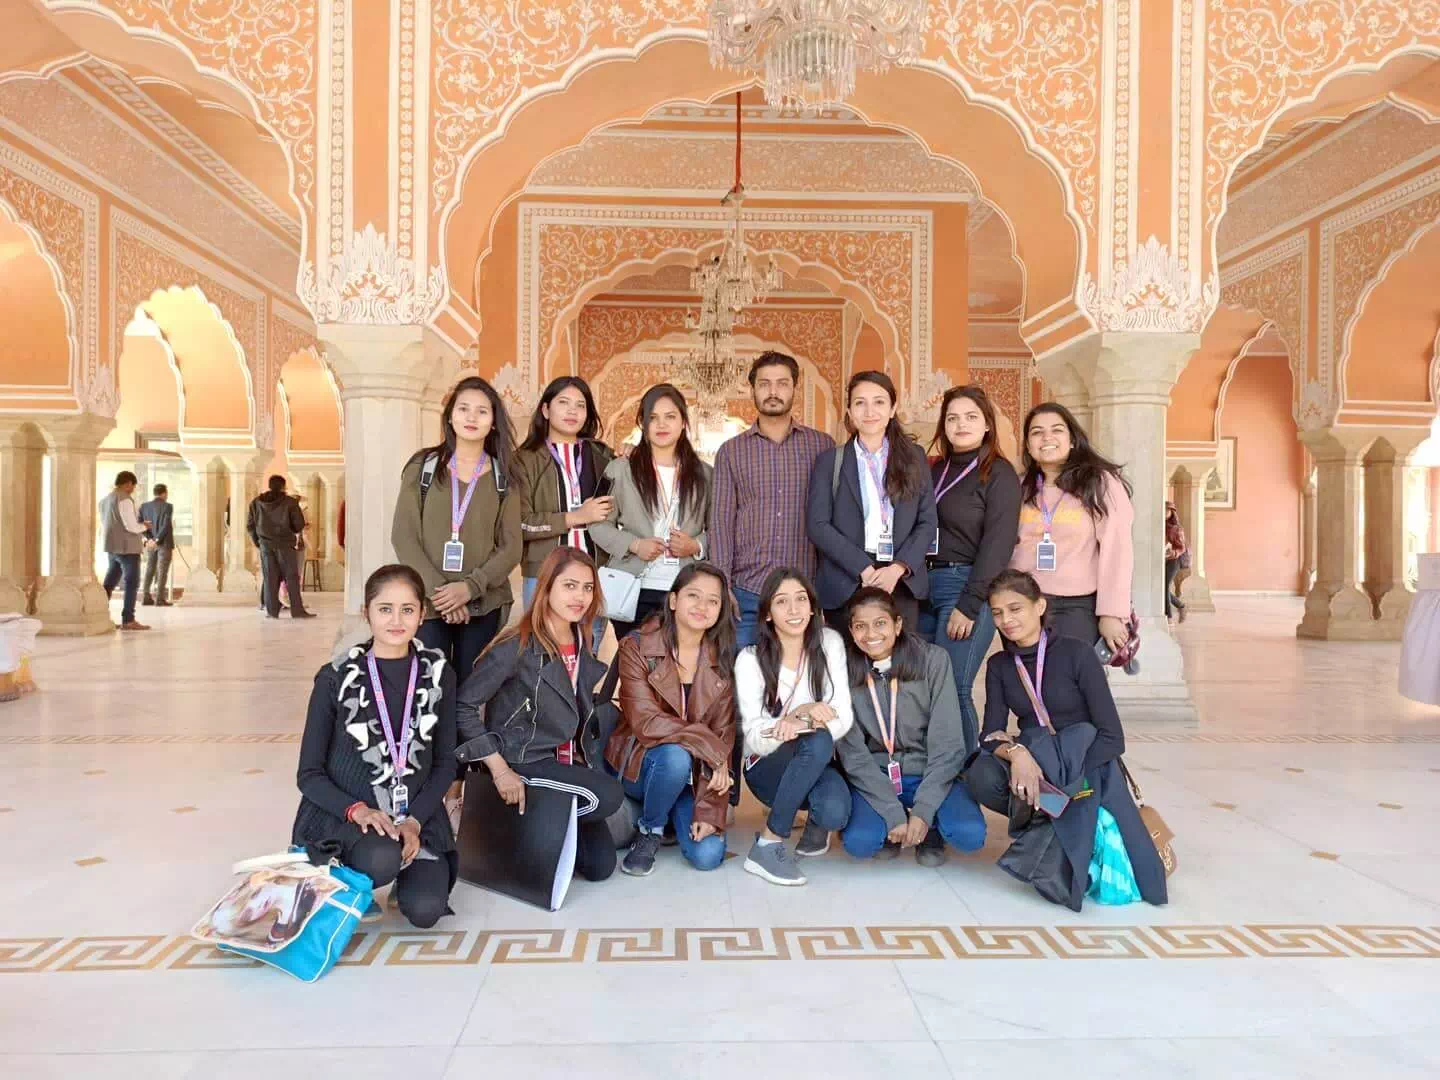 Visit to Jai Mahal Palace